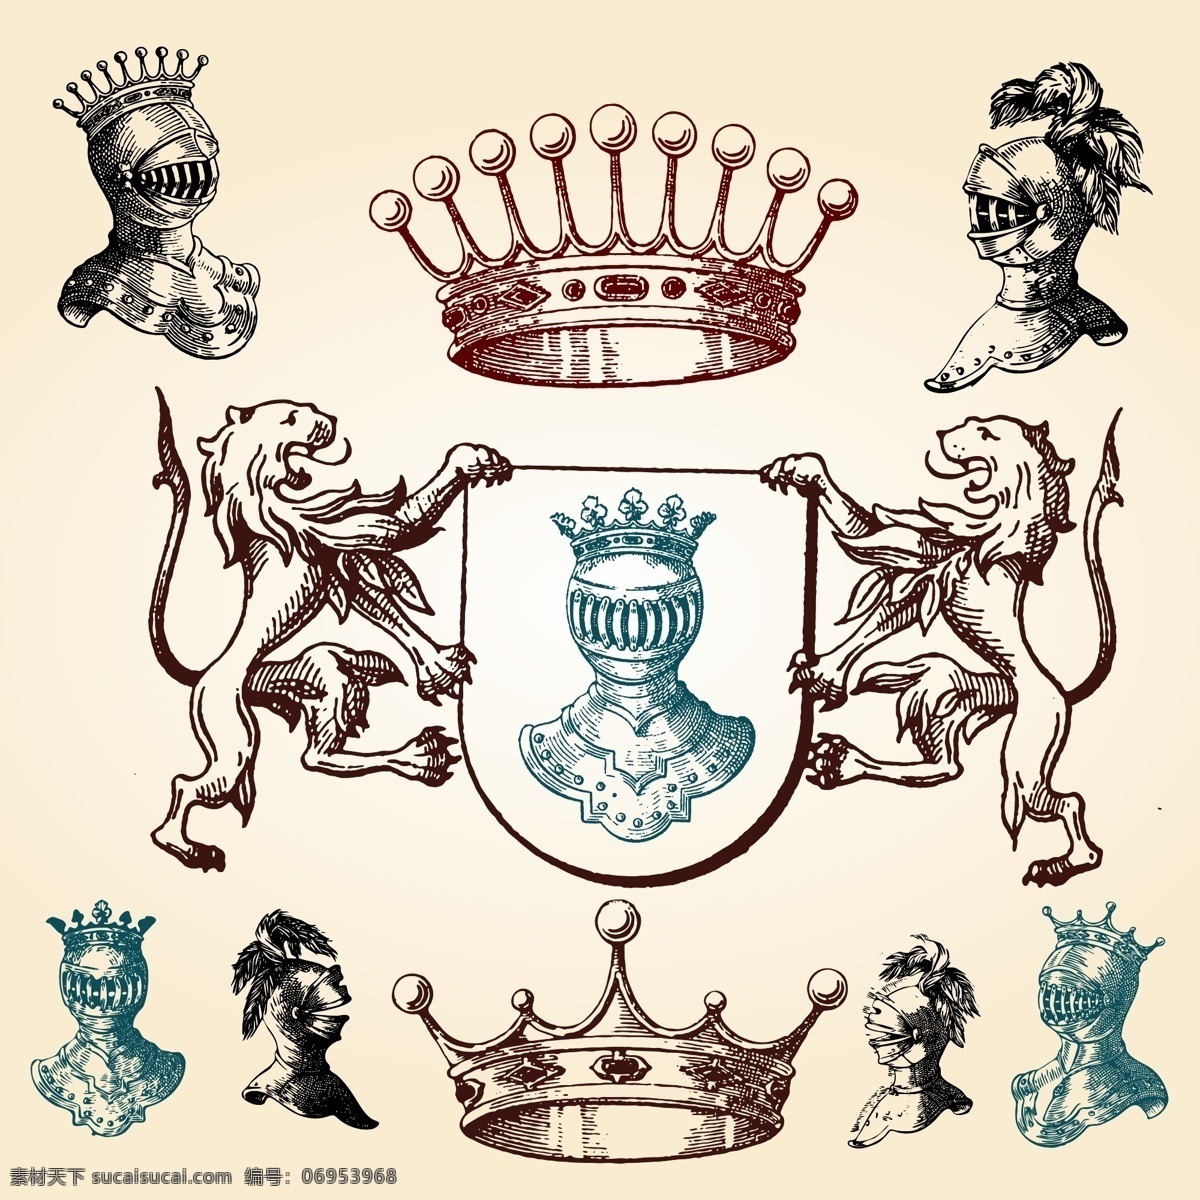 标识标志图标 盾牌 古典 怪物 皇冠 欧式 手绘 图标 小图标 矢量 模板下载 图标矢量主题 家居装饰素材